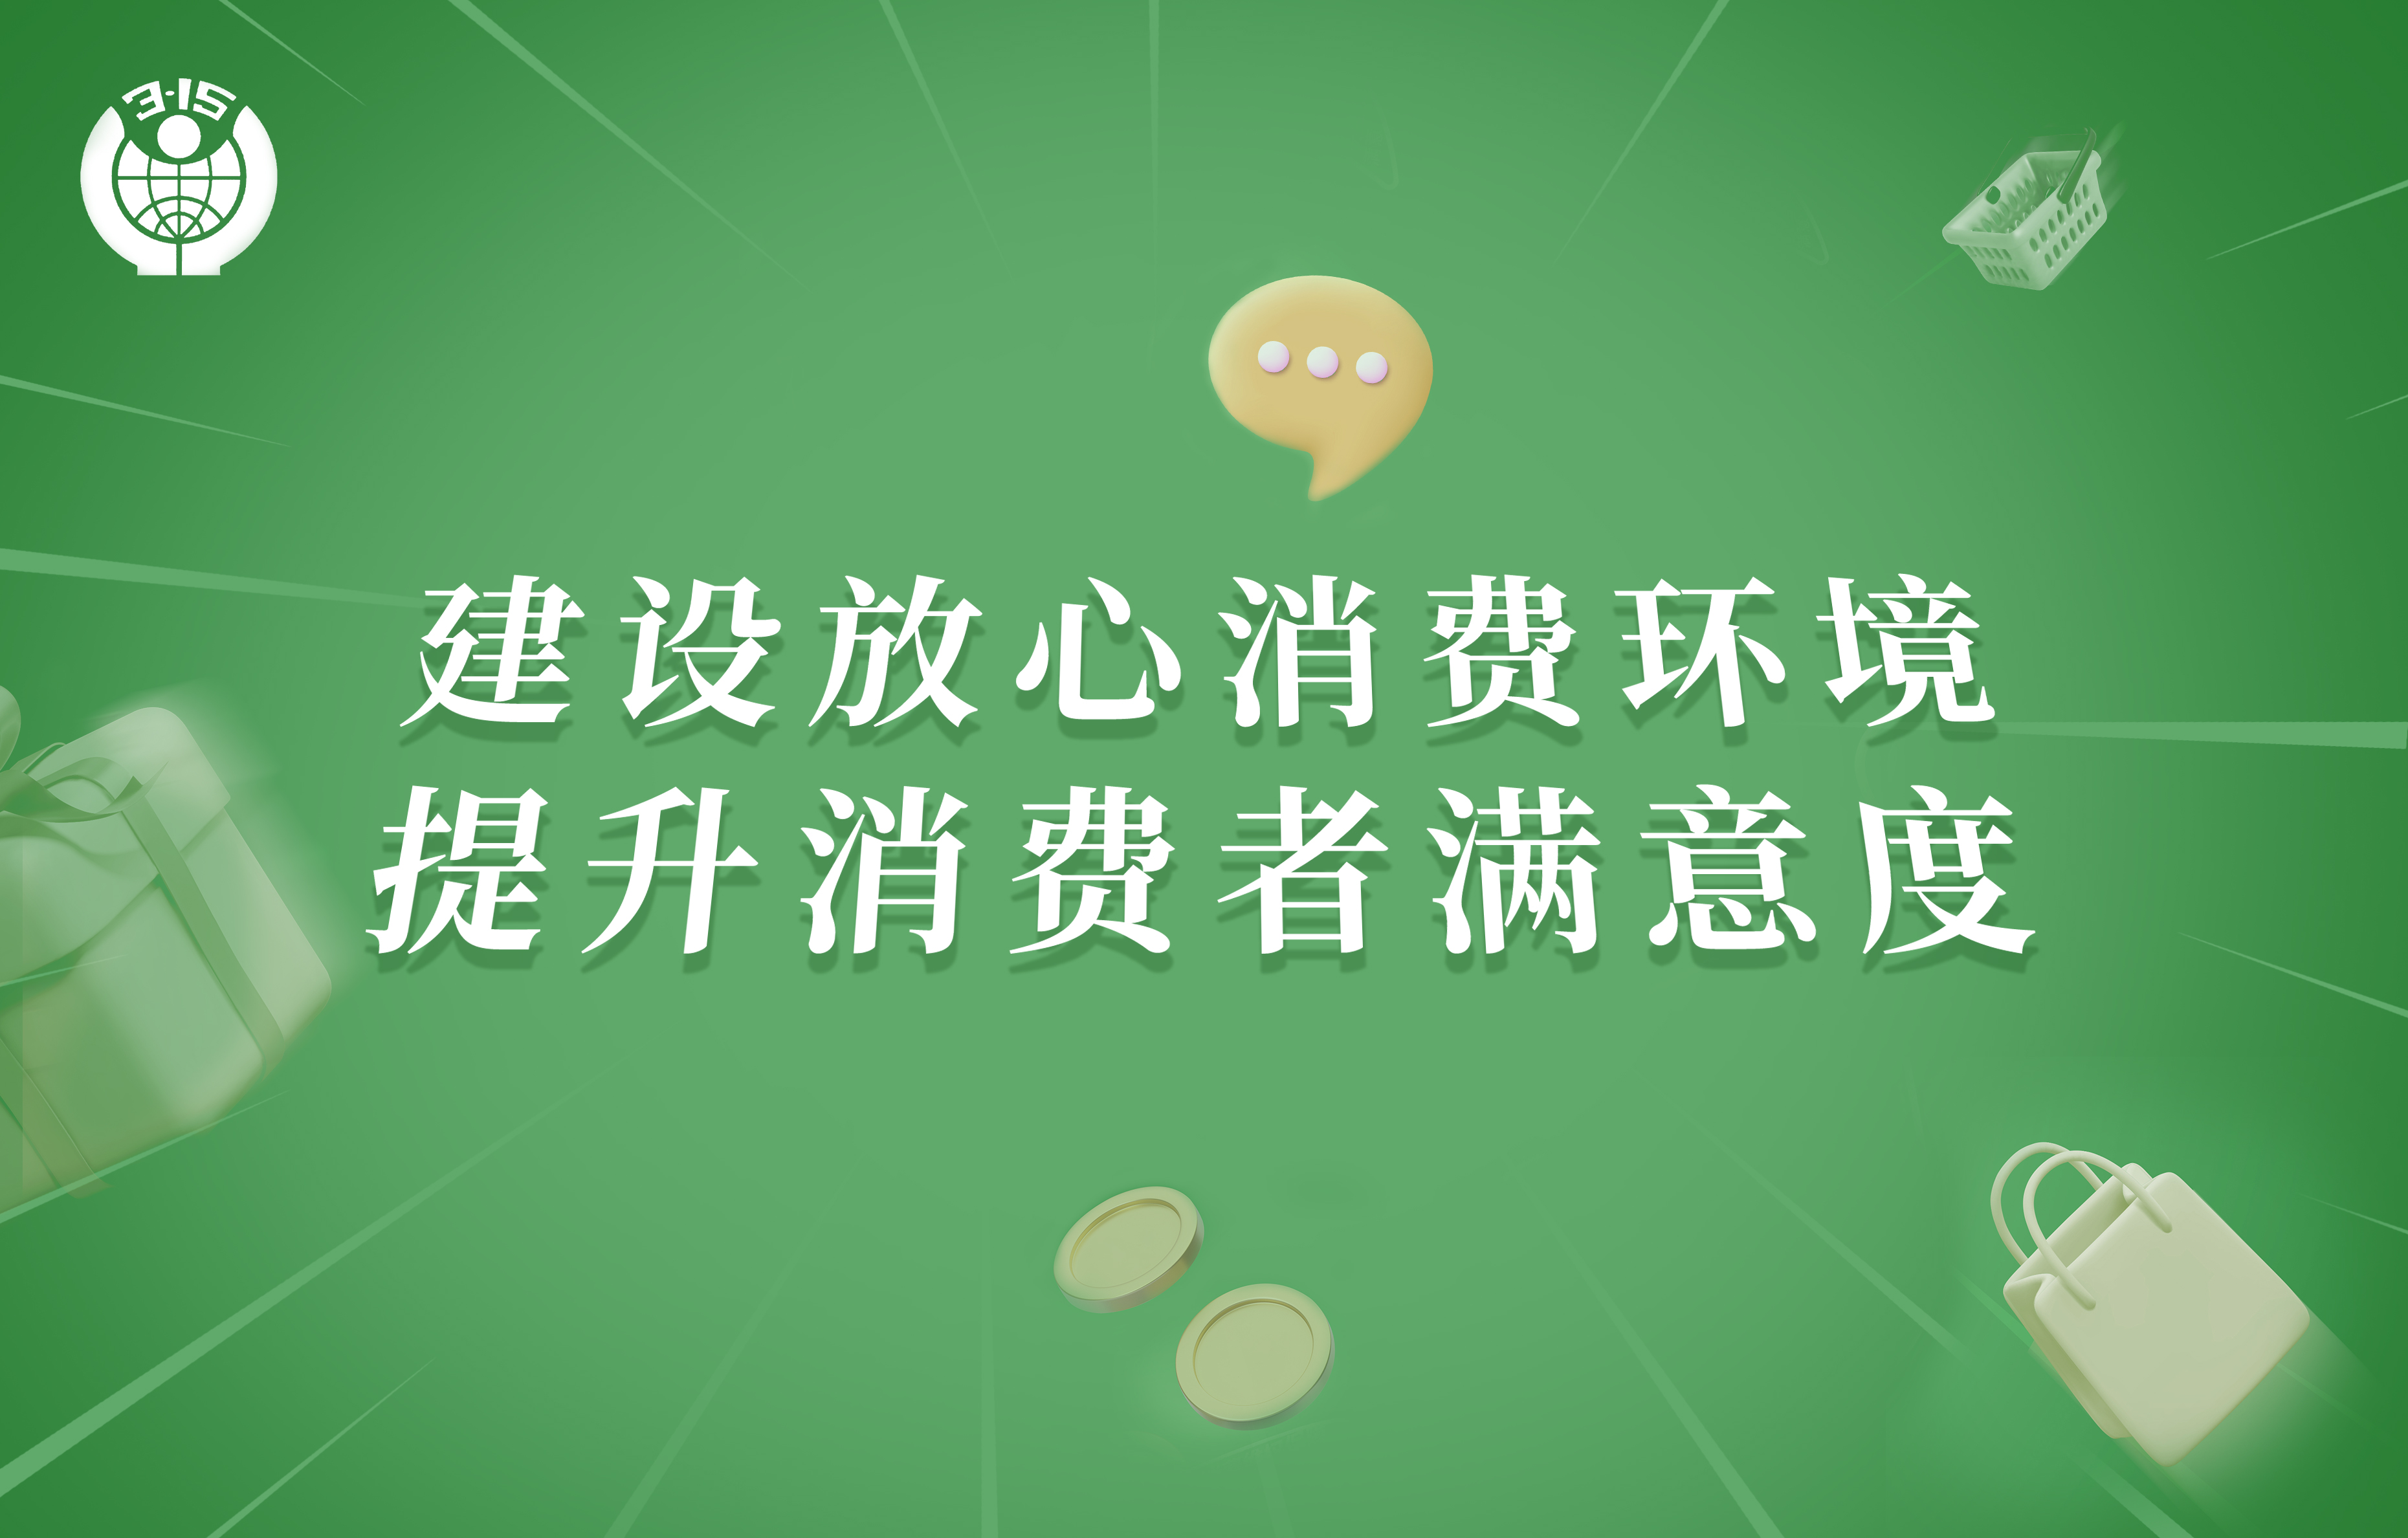 天王表積極響應「深圳市放心消費環境建設」號召，推進營造優良消費環境